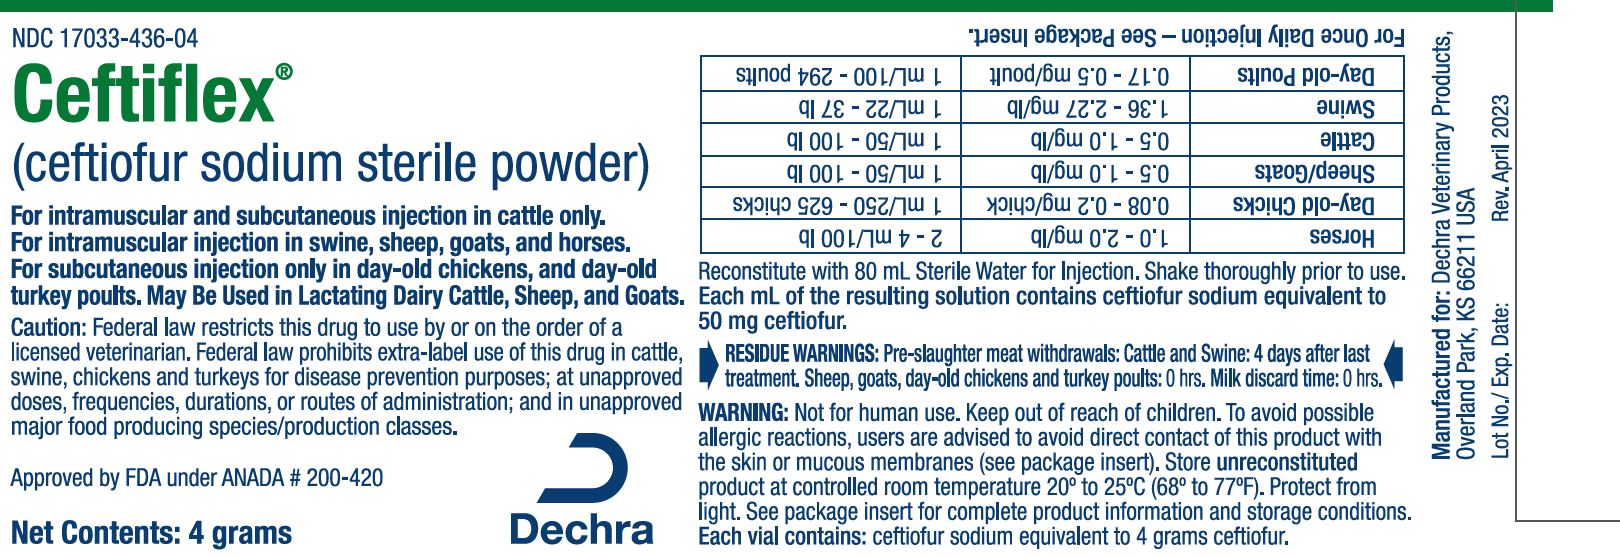 Dechra Ceftiflex 4 g Container Label